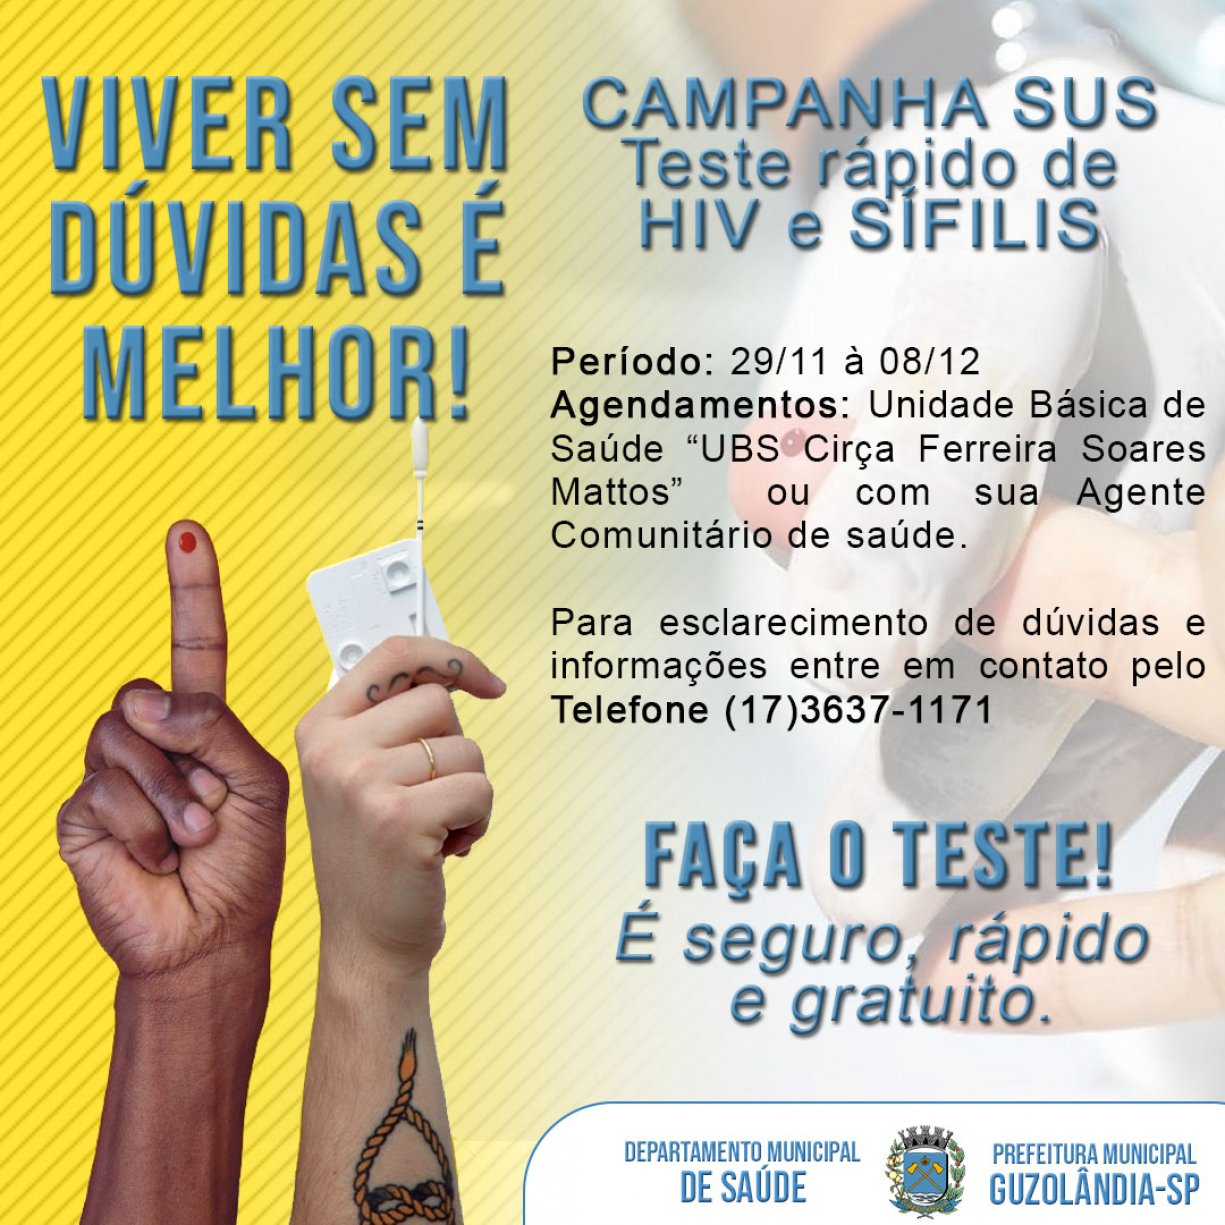 CAMPANHA DE TESTES RÁPIDO DE HIV E SÍFILIS